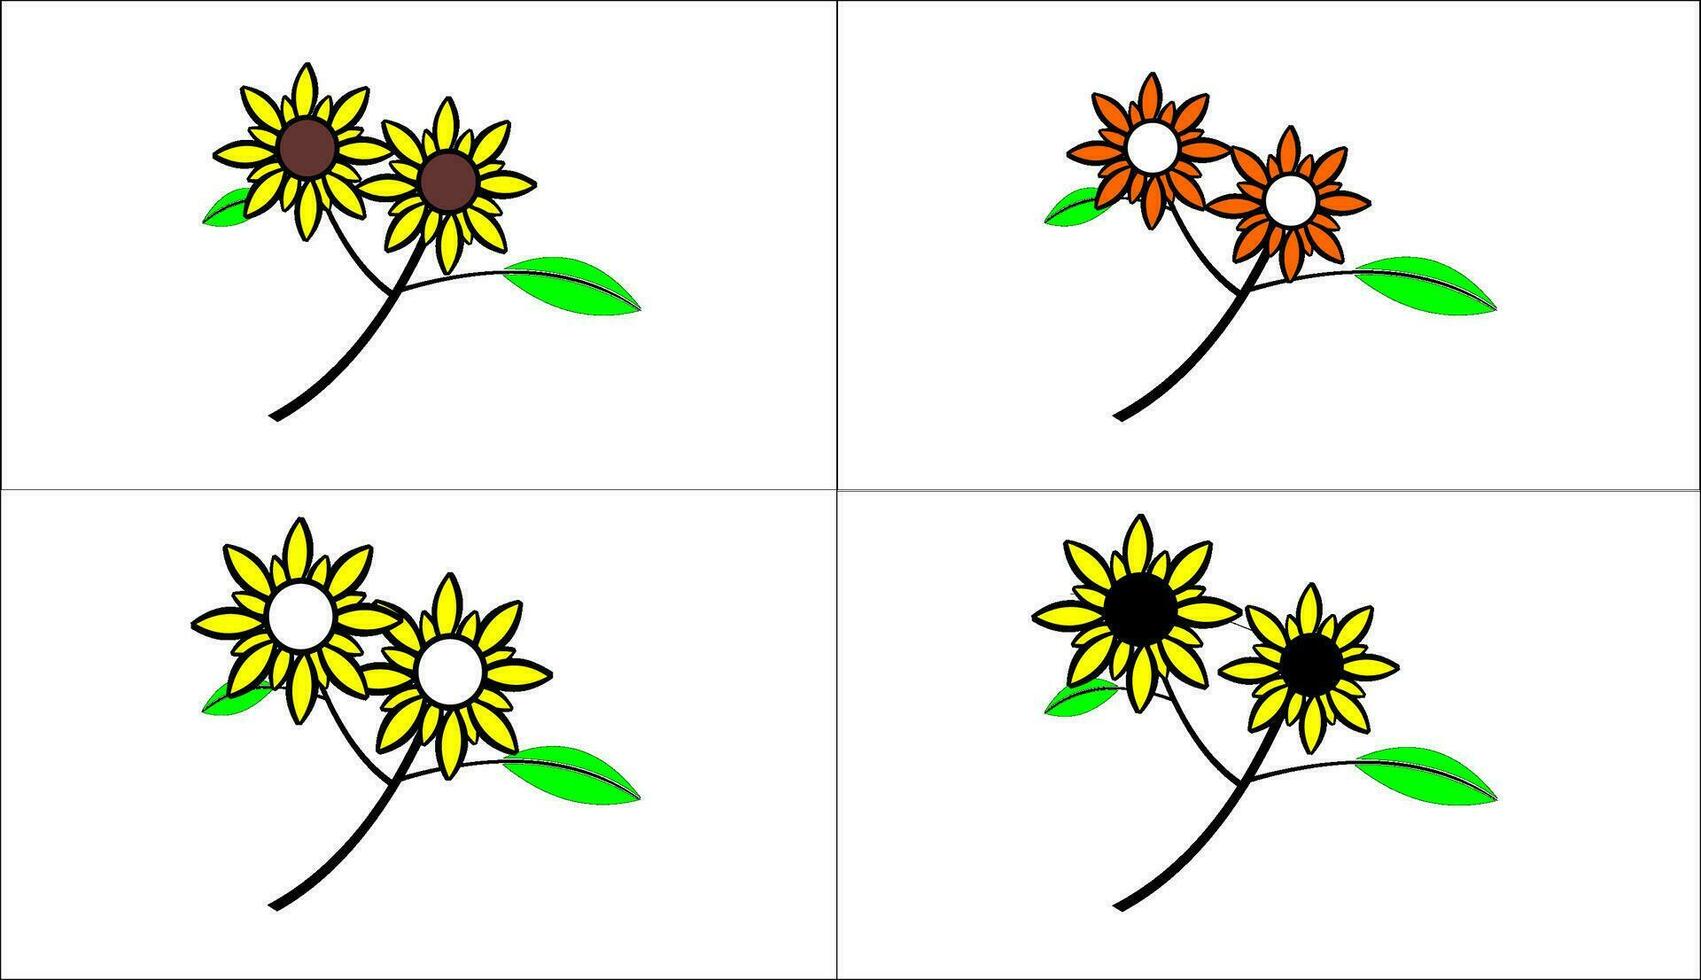 un icône représentant une fleur vecteur